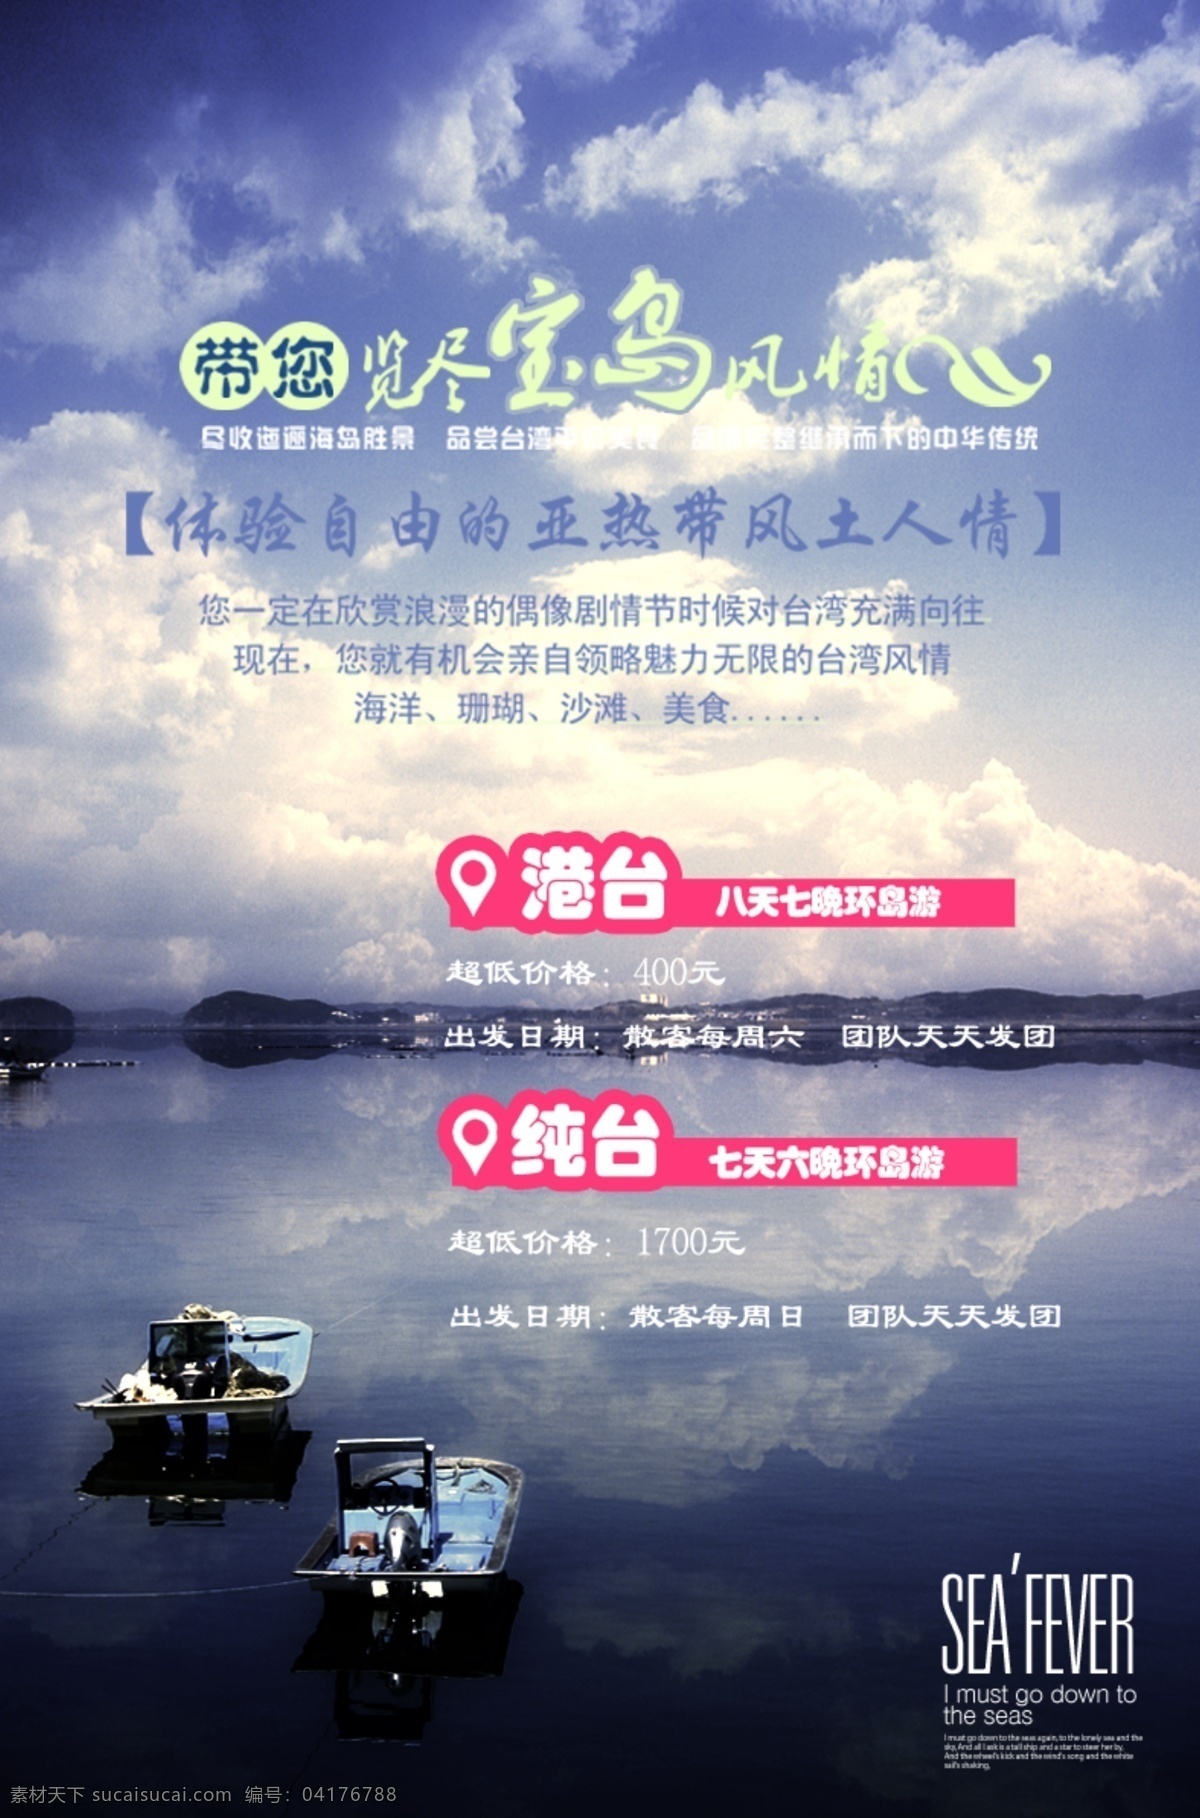 台湾旅游广告 台湾 港台 旅游 广告 黑色